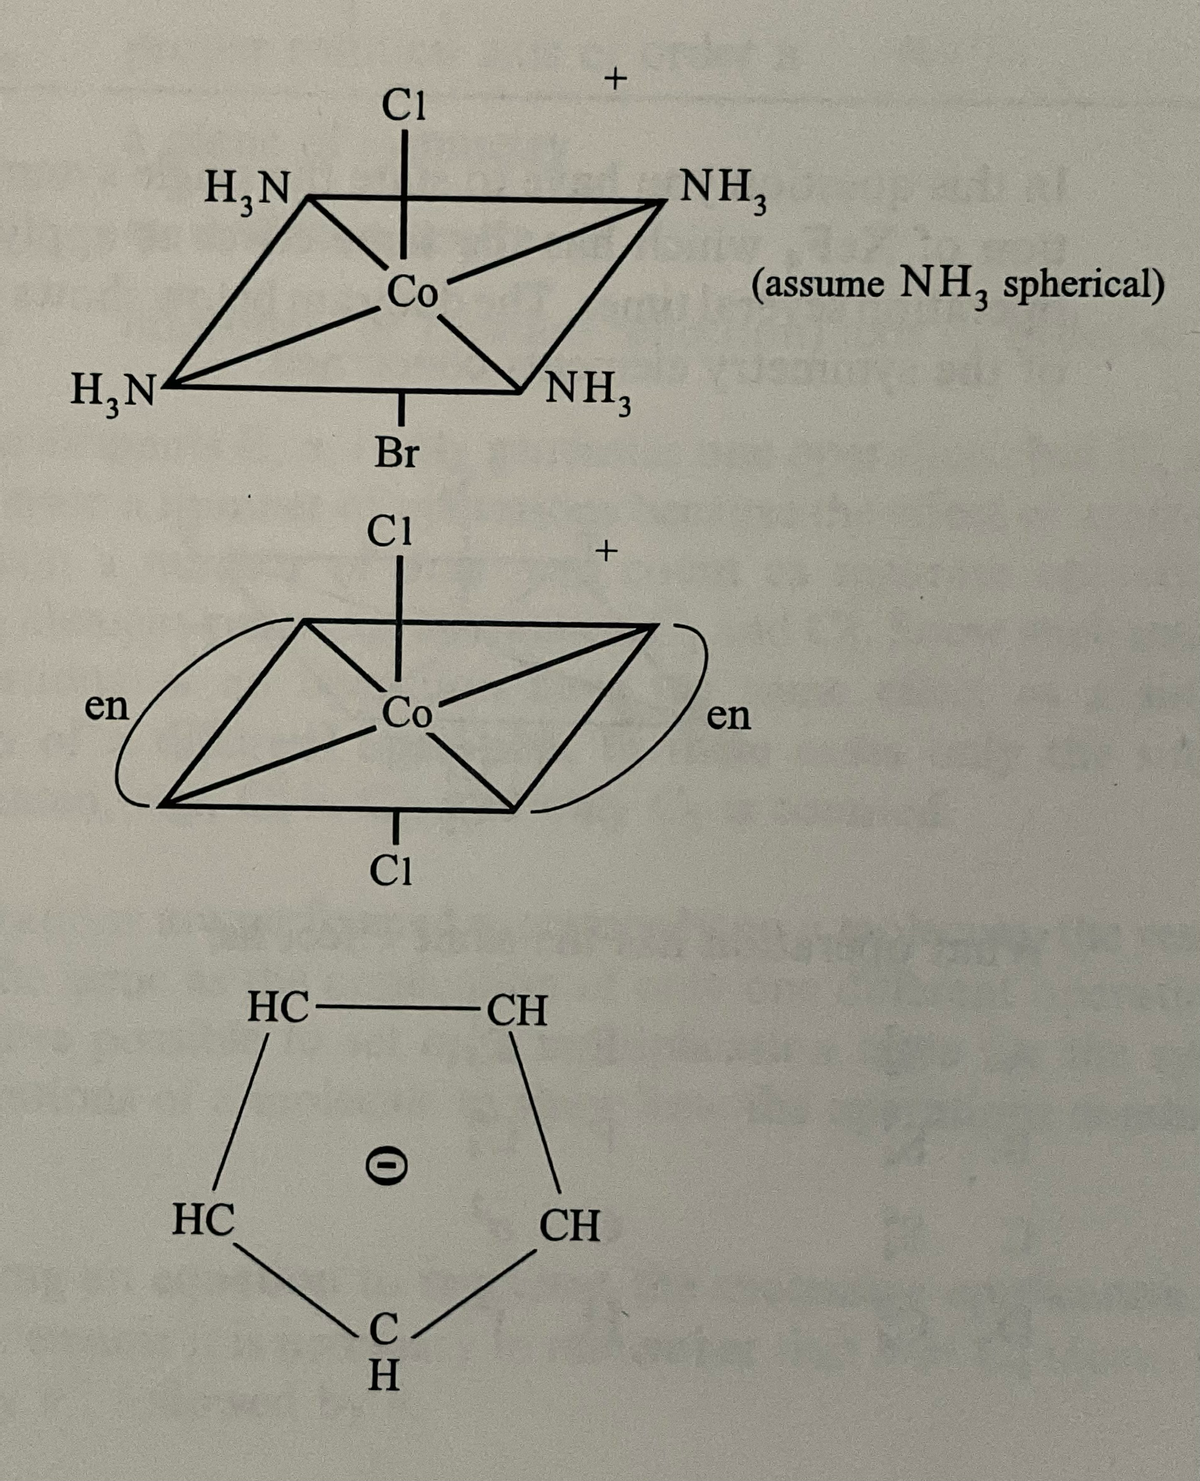 H₂N
en
H₂N
HC
HC-
C1
Co
Br
C1
Co
C1
0
H
+
NH₂
CH
+
CH
NH,
#
(assume NH, spherical)
en